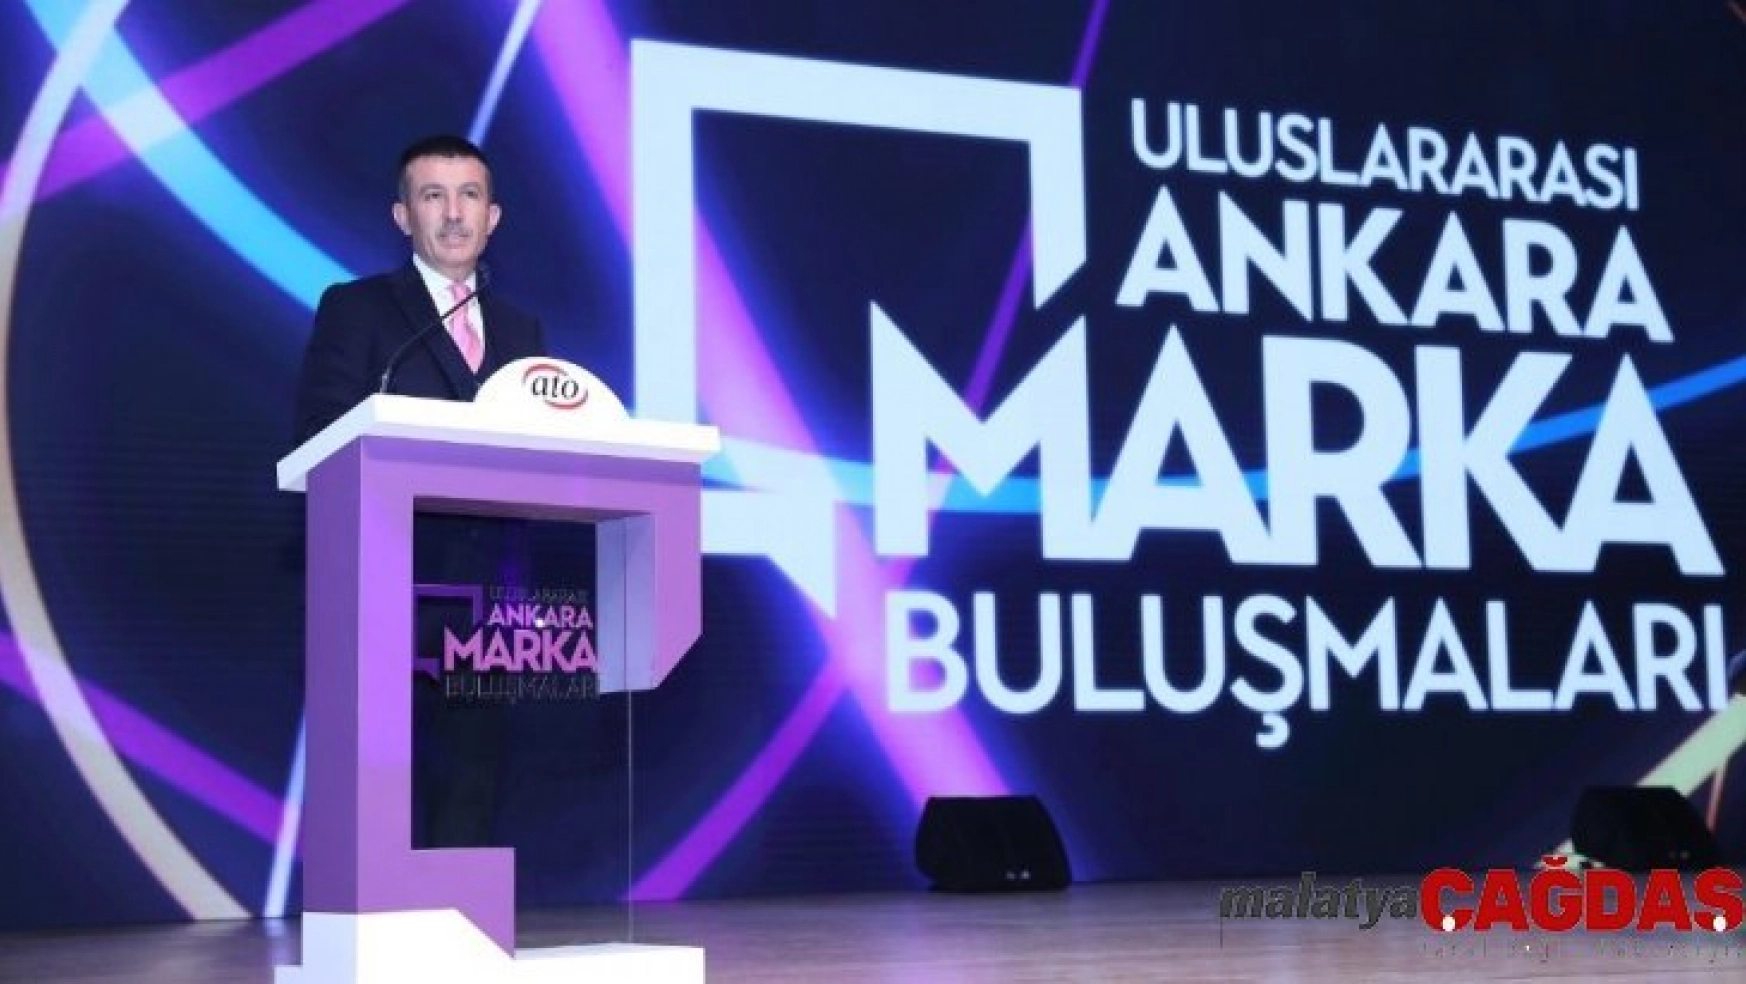 Uluslararası Ankara Marka Buluşmaları'nda ele alındı